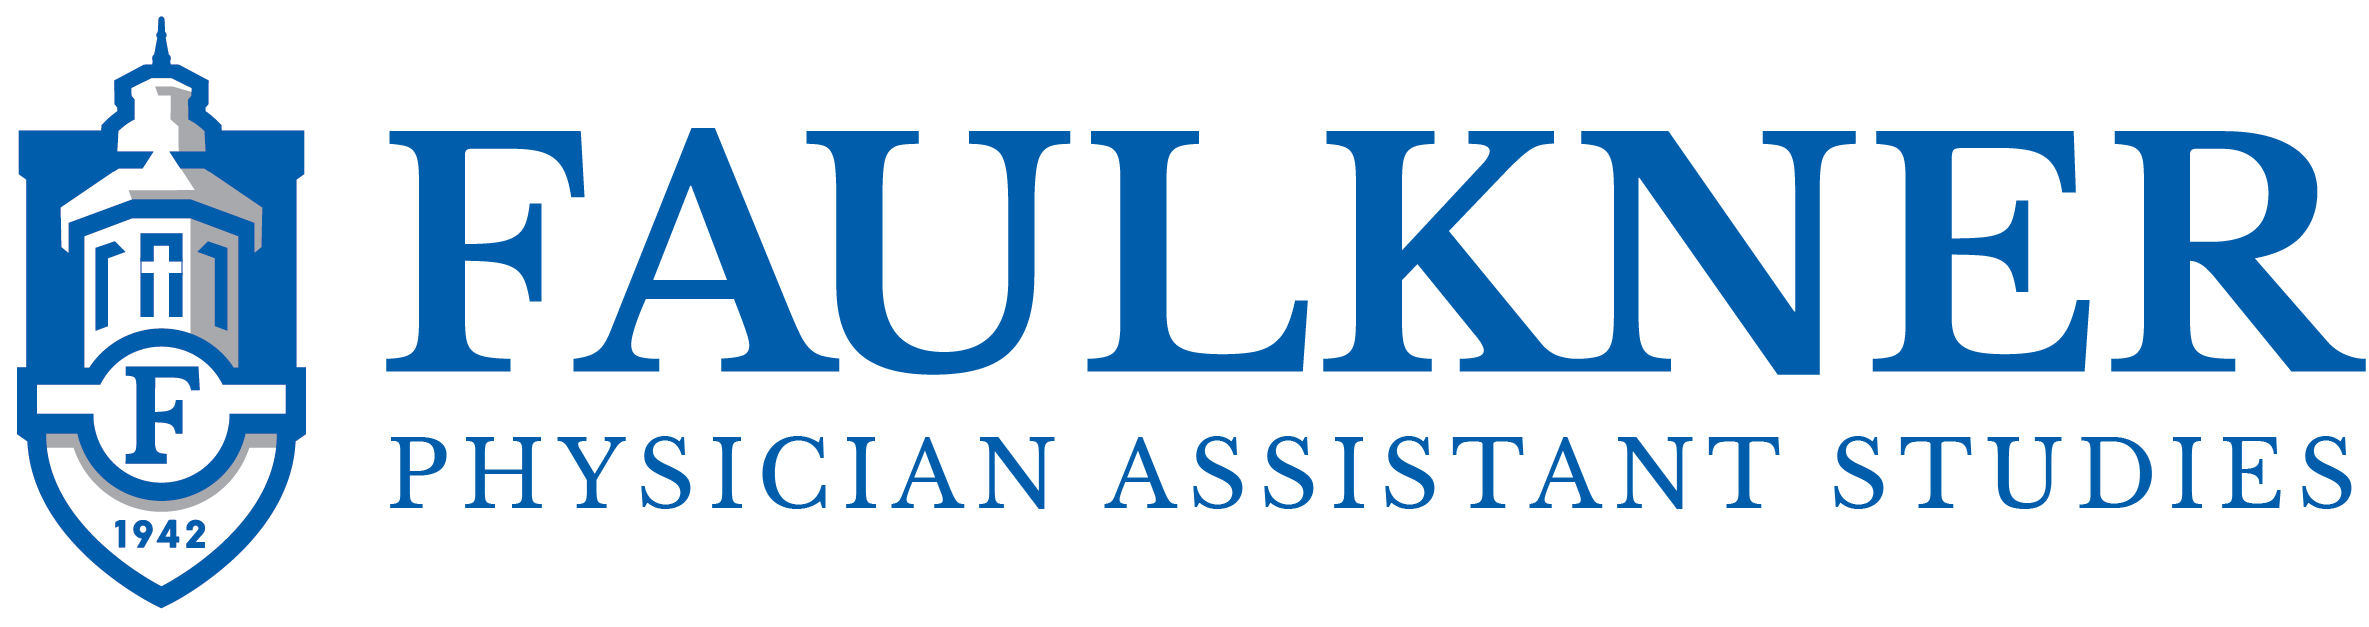 Faulkner PAS Program Logo